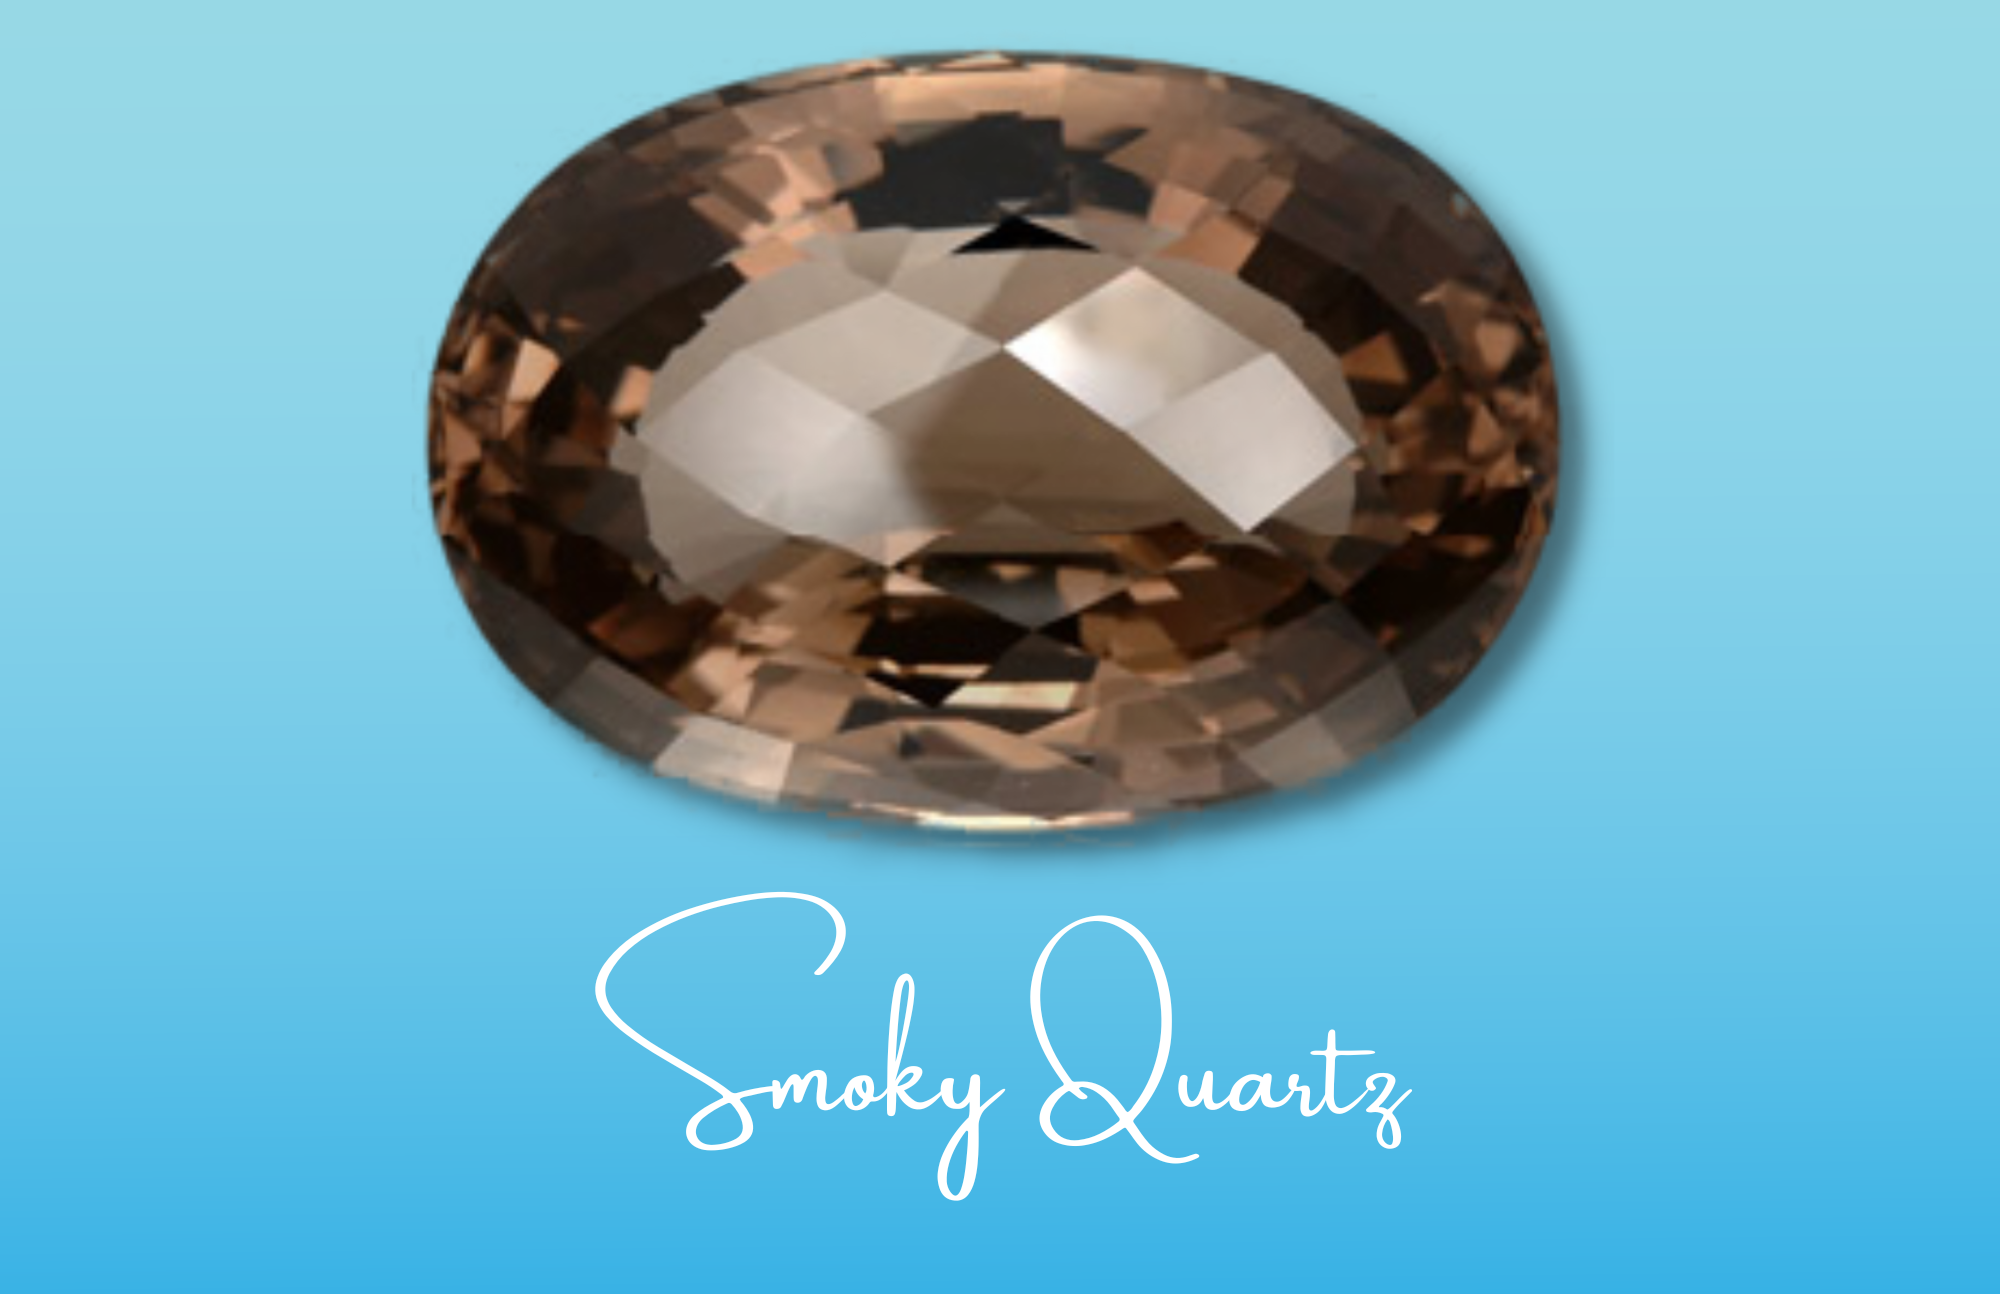 An oblong transparent black smoky quartz